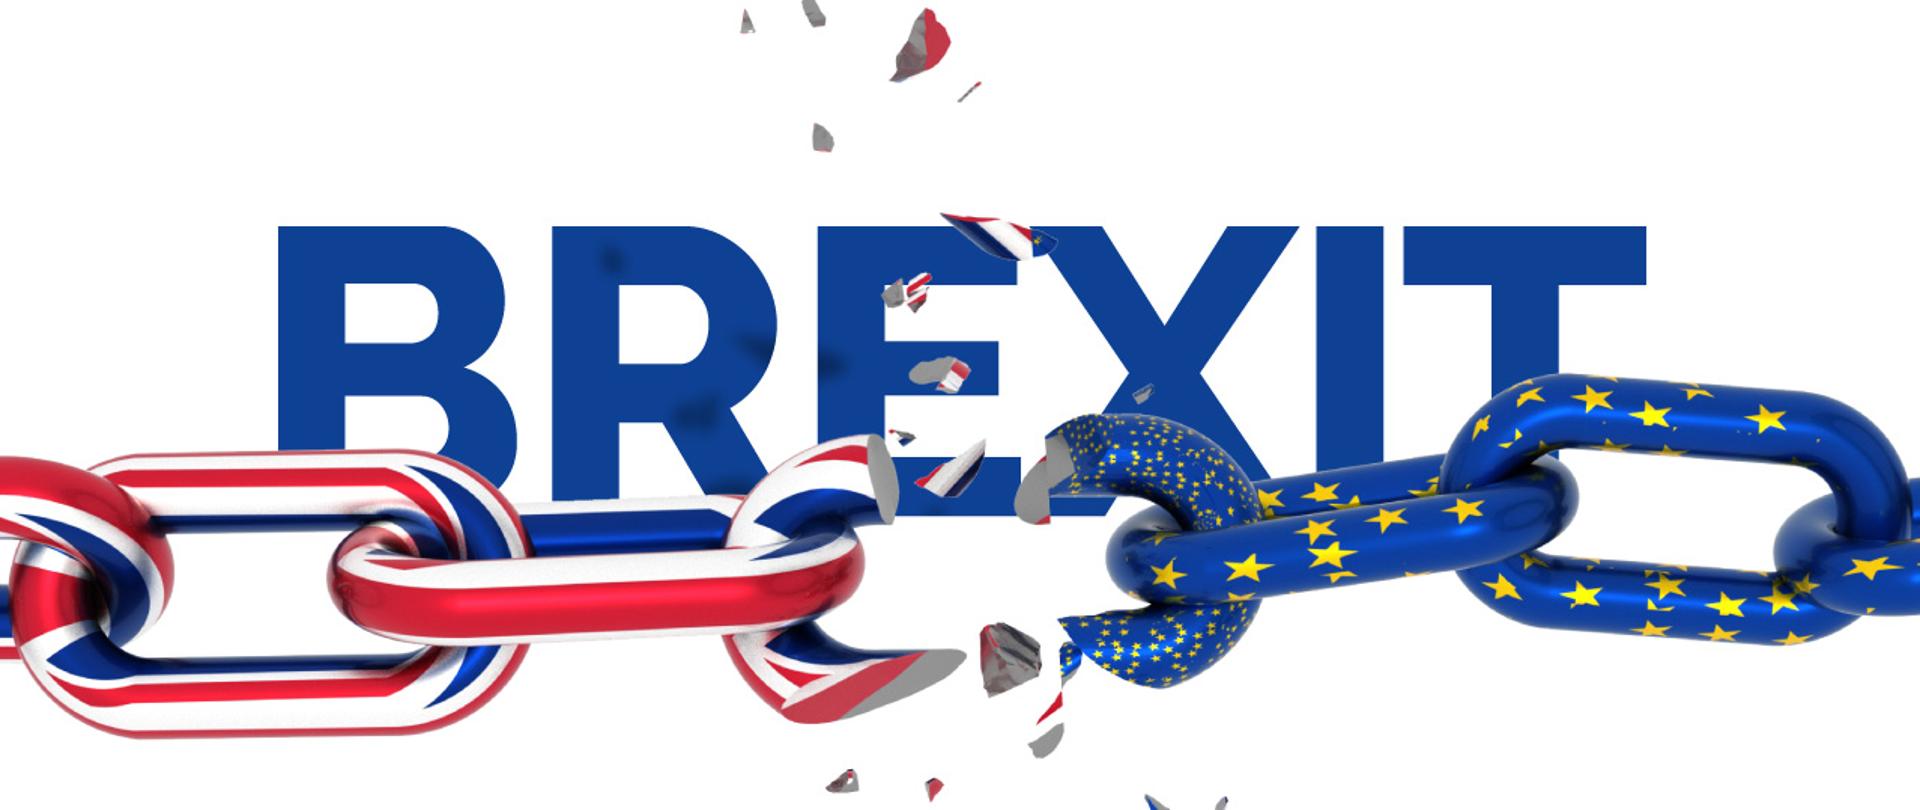 Przerwany łańcuch w kolorach flag Wielkiej Brytanii i UE, w tle napis BREXIT.